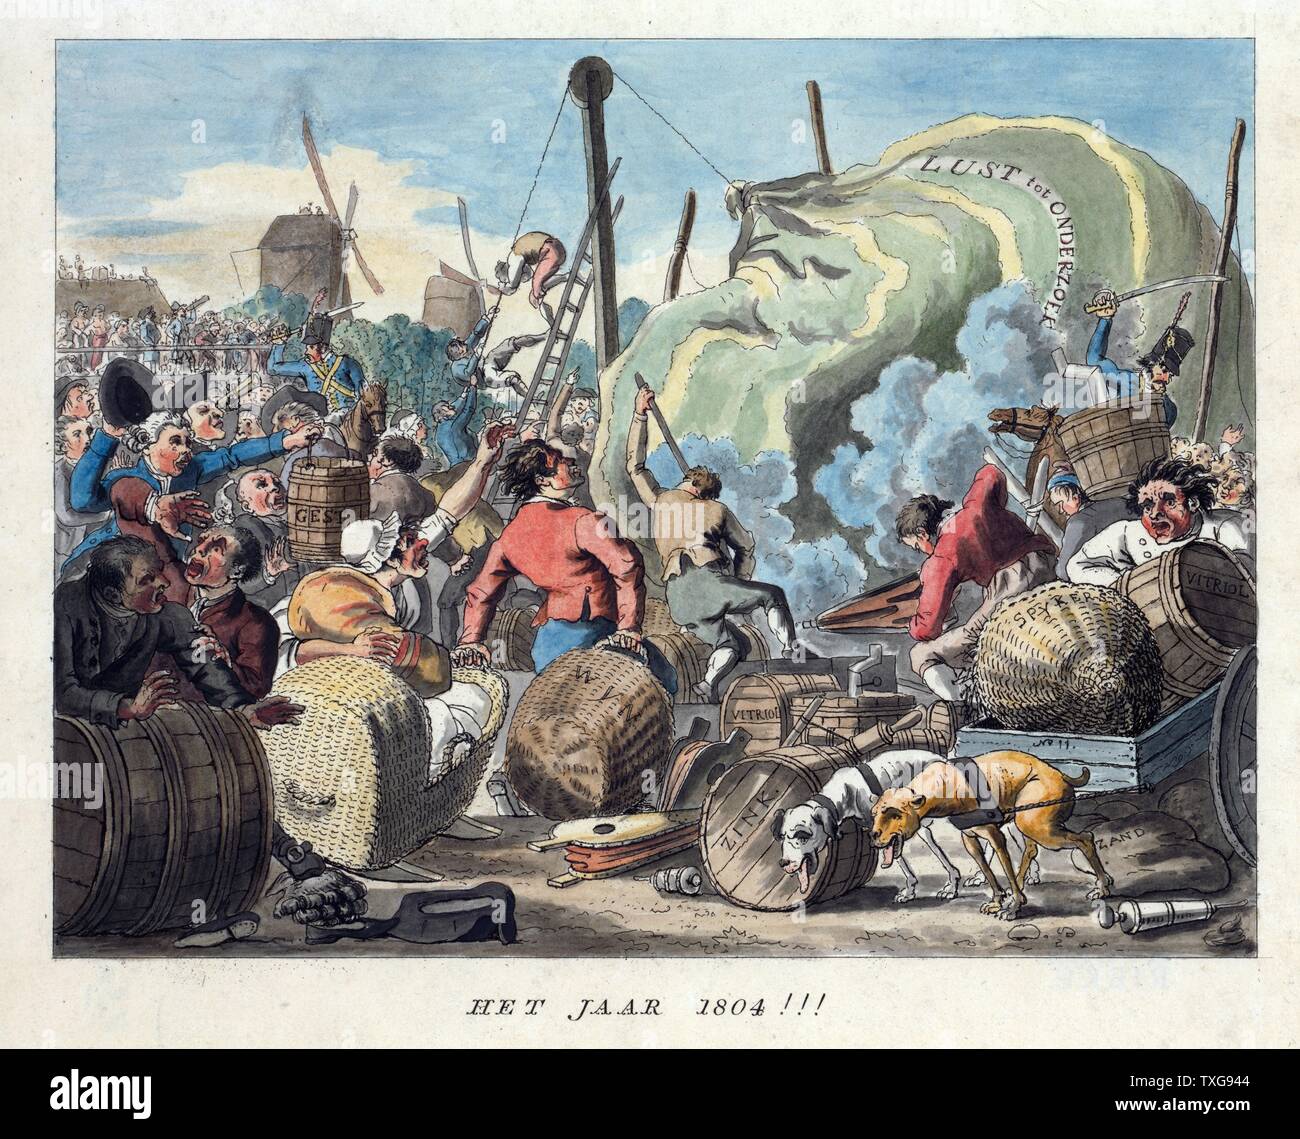 Niederländische Cartoon, Vorhersage von Ballonfahrten in 1804. Chaotische Szene als ein Versuch unternommen wird, den Ballon in der Luft zu erhalten. Vitriol (Schwefelsäure) ist in der Auslieferung Wasserstoff zu produzieren. Stockfoto